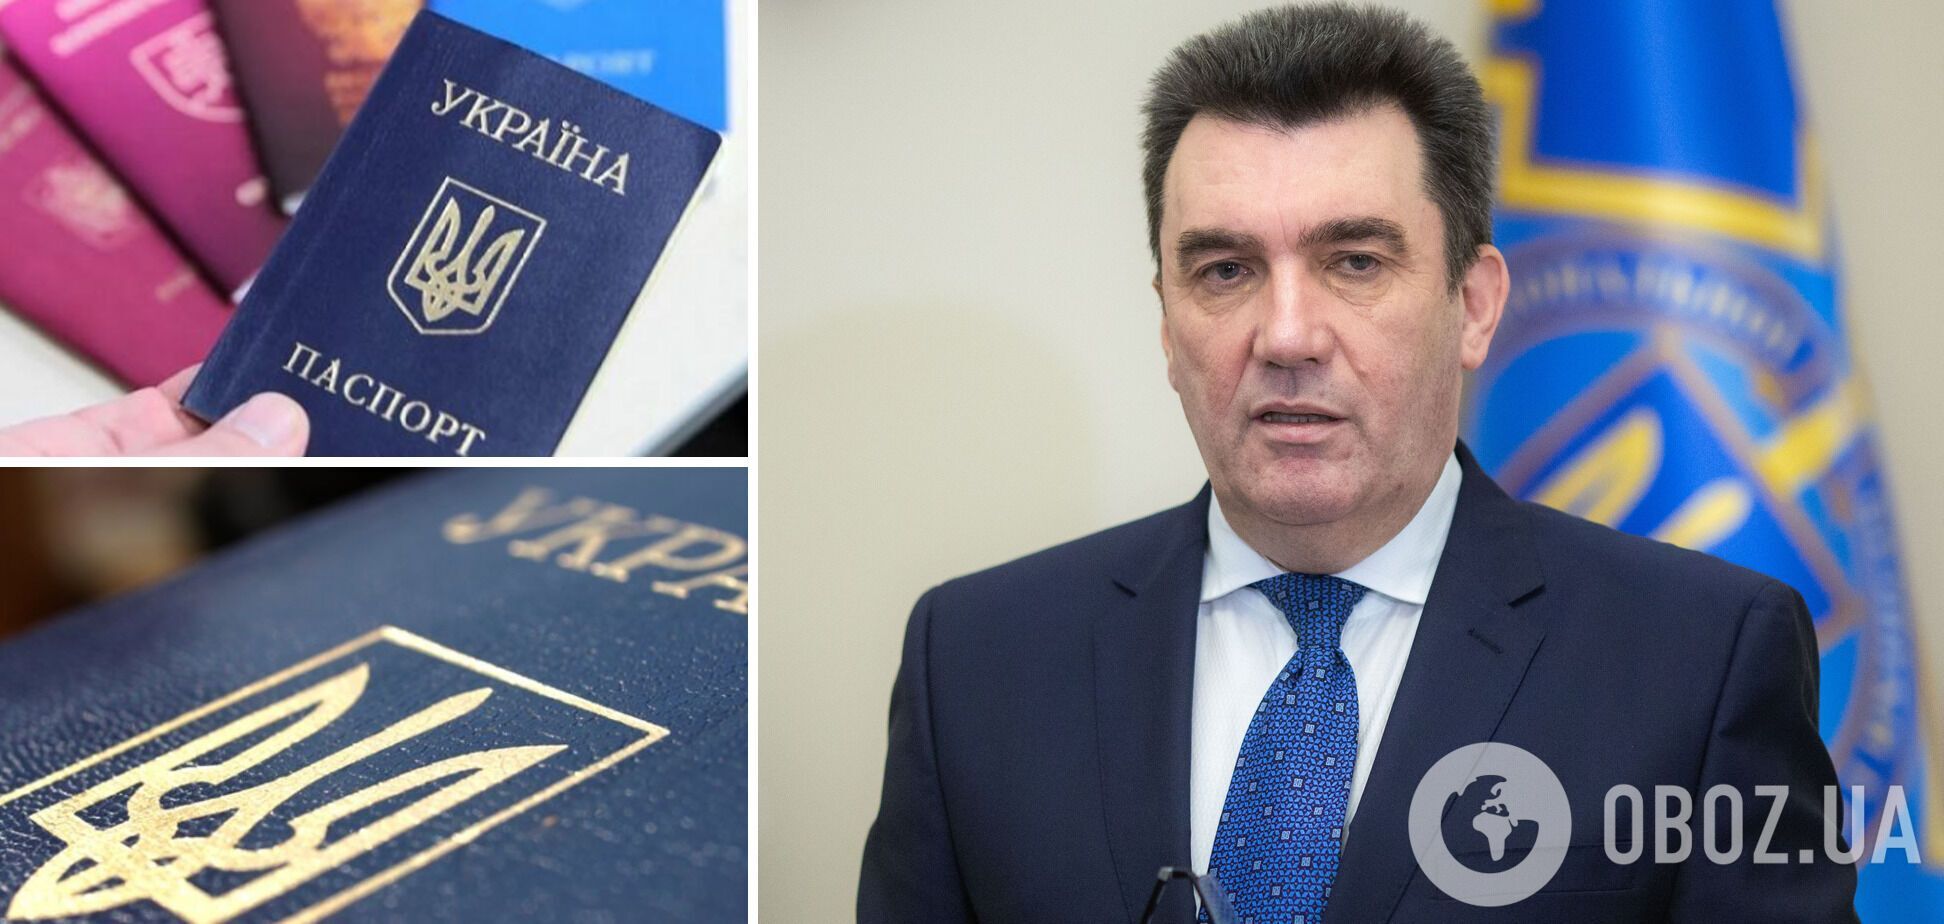 Данилов оценил вероятность введения двойного гражданства в Украине: мы подняли этот вопрос